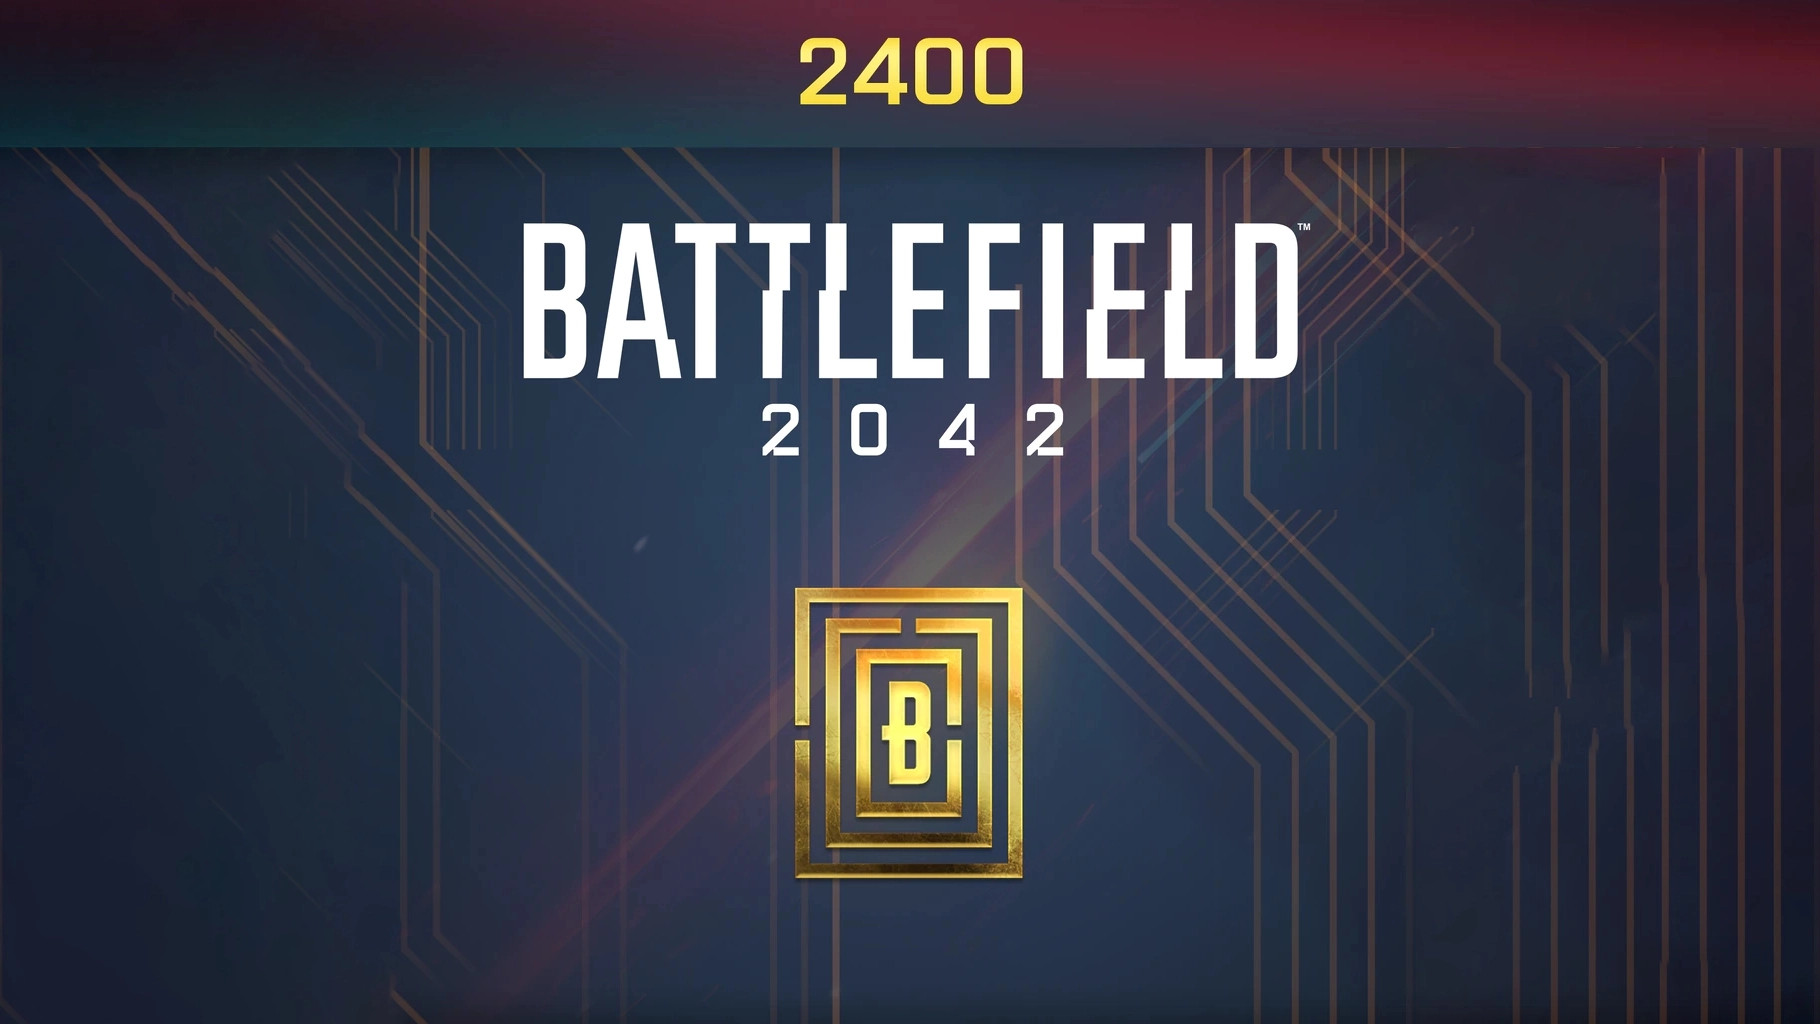 Battlefield 2042 - 2400 BFC Balance XBOX One / Xbox Series X|S CD Key 20.9$